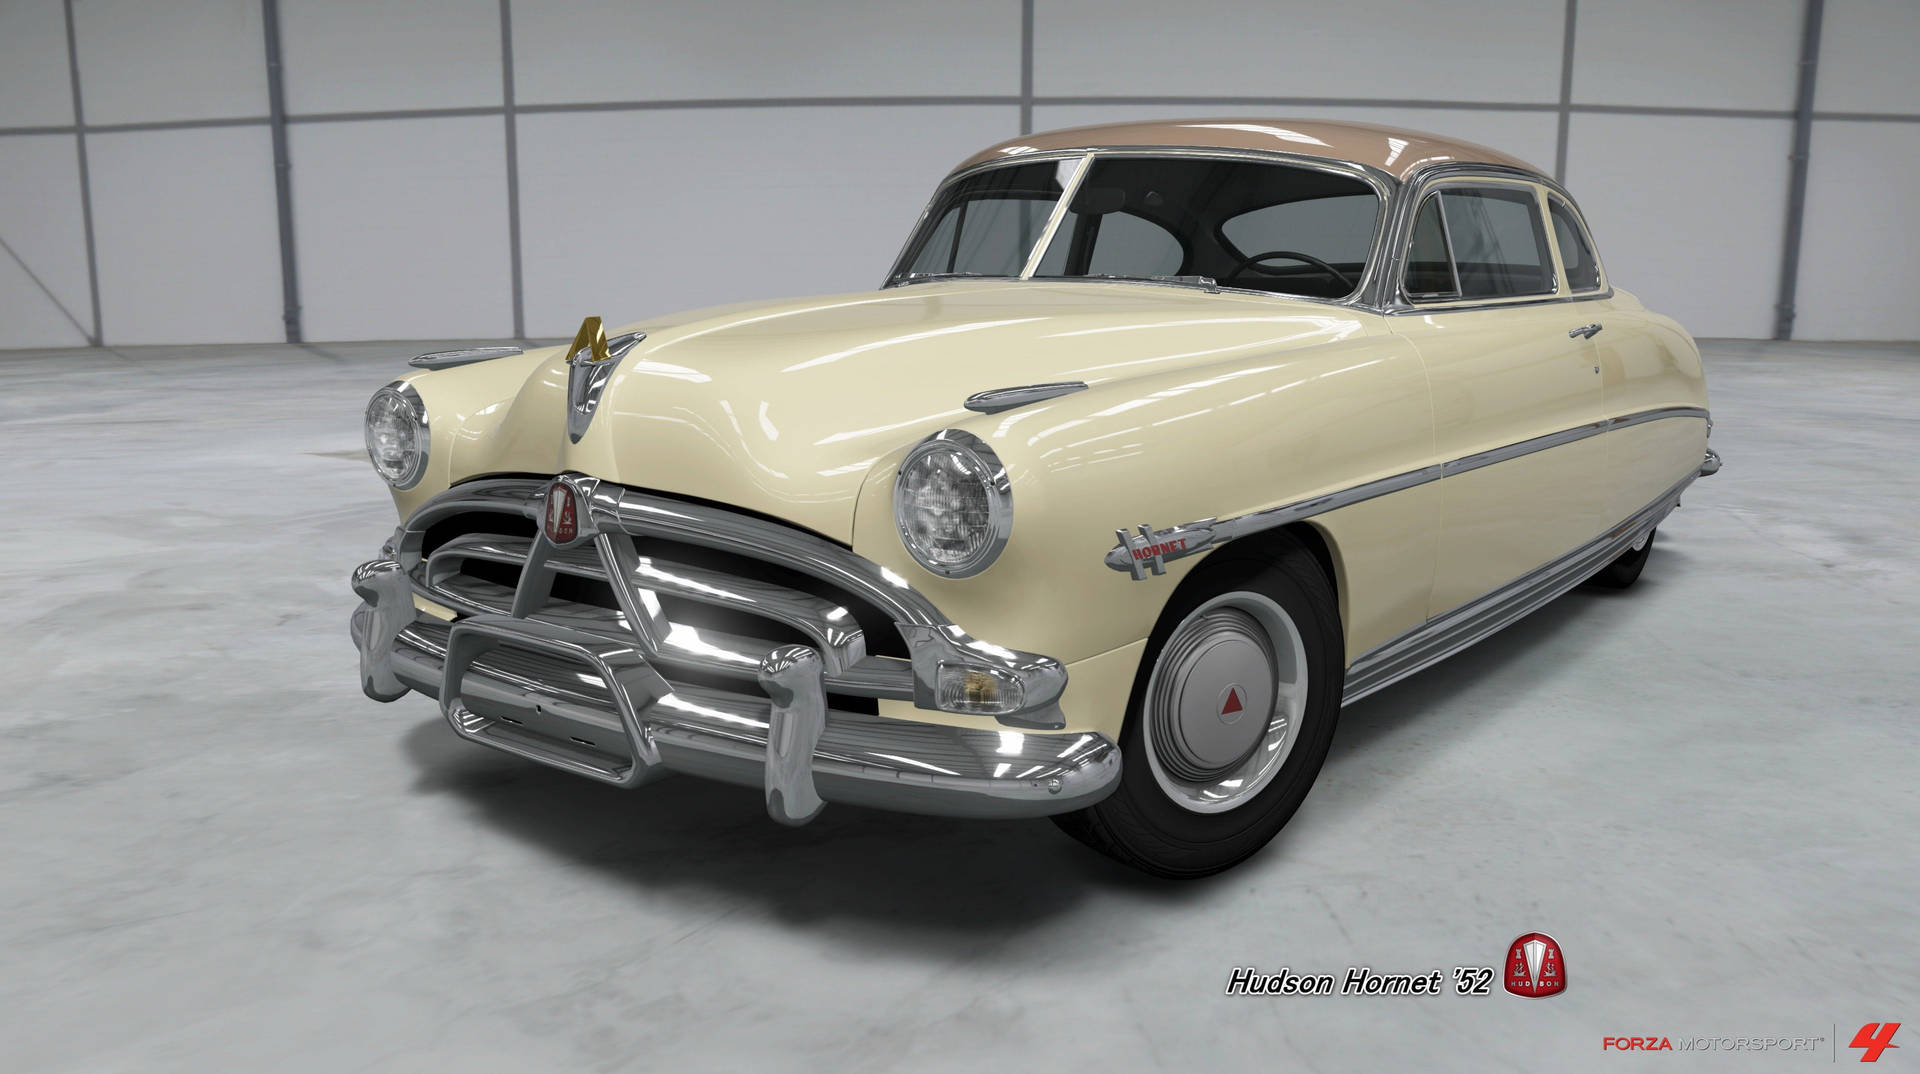 Hudson Hornet Wallpapers